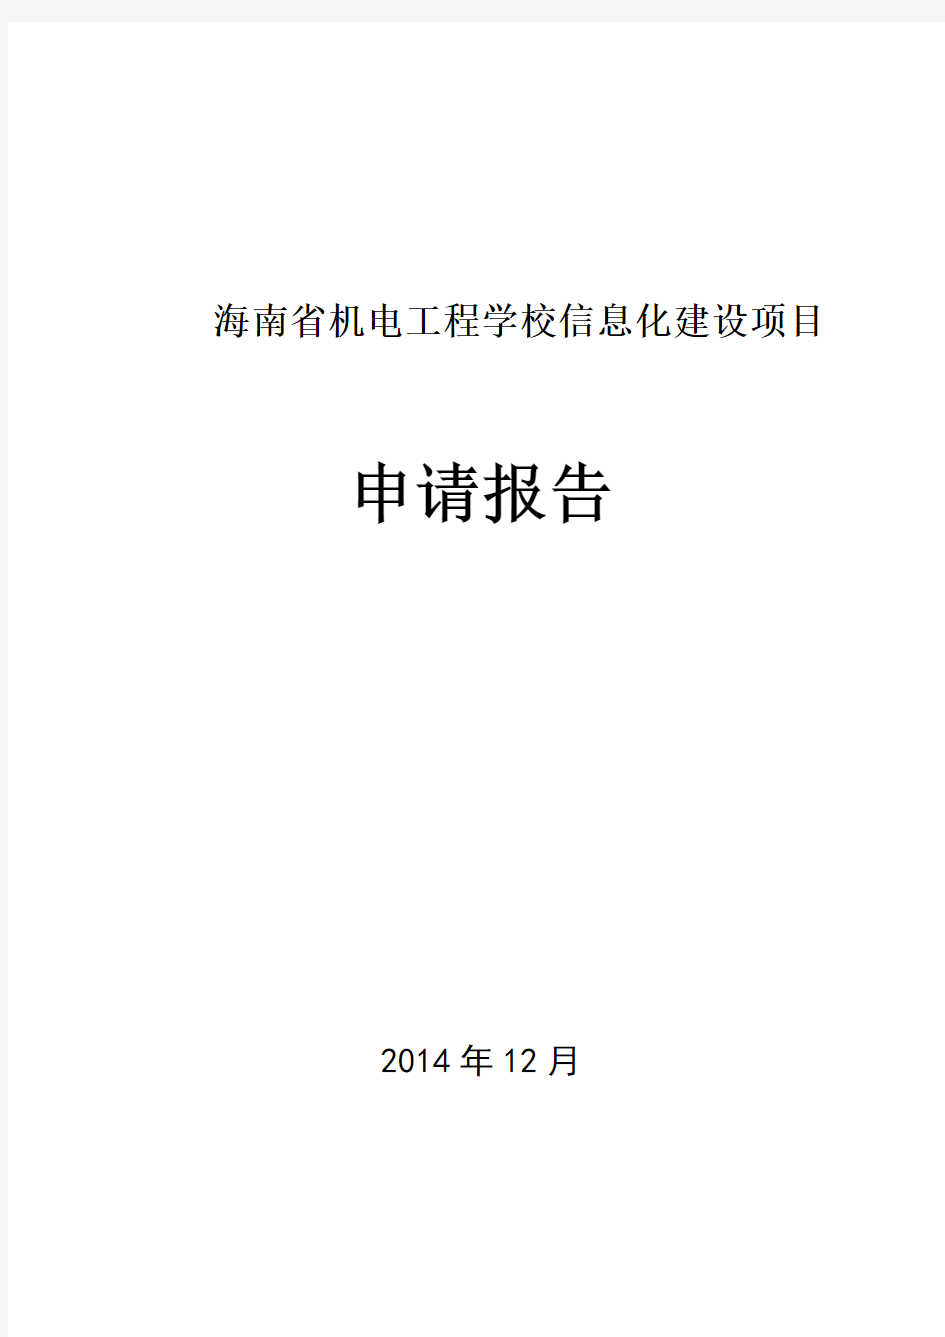 海南省机电工程学校信息化建设项目申请报告